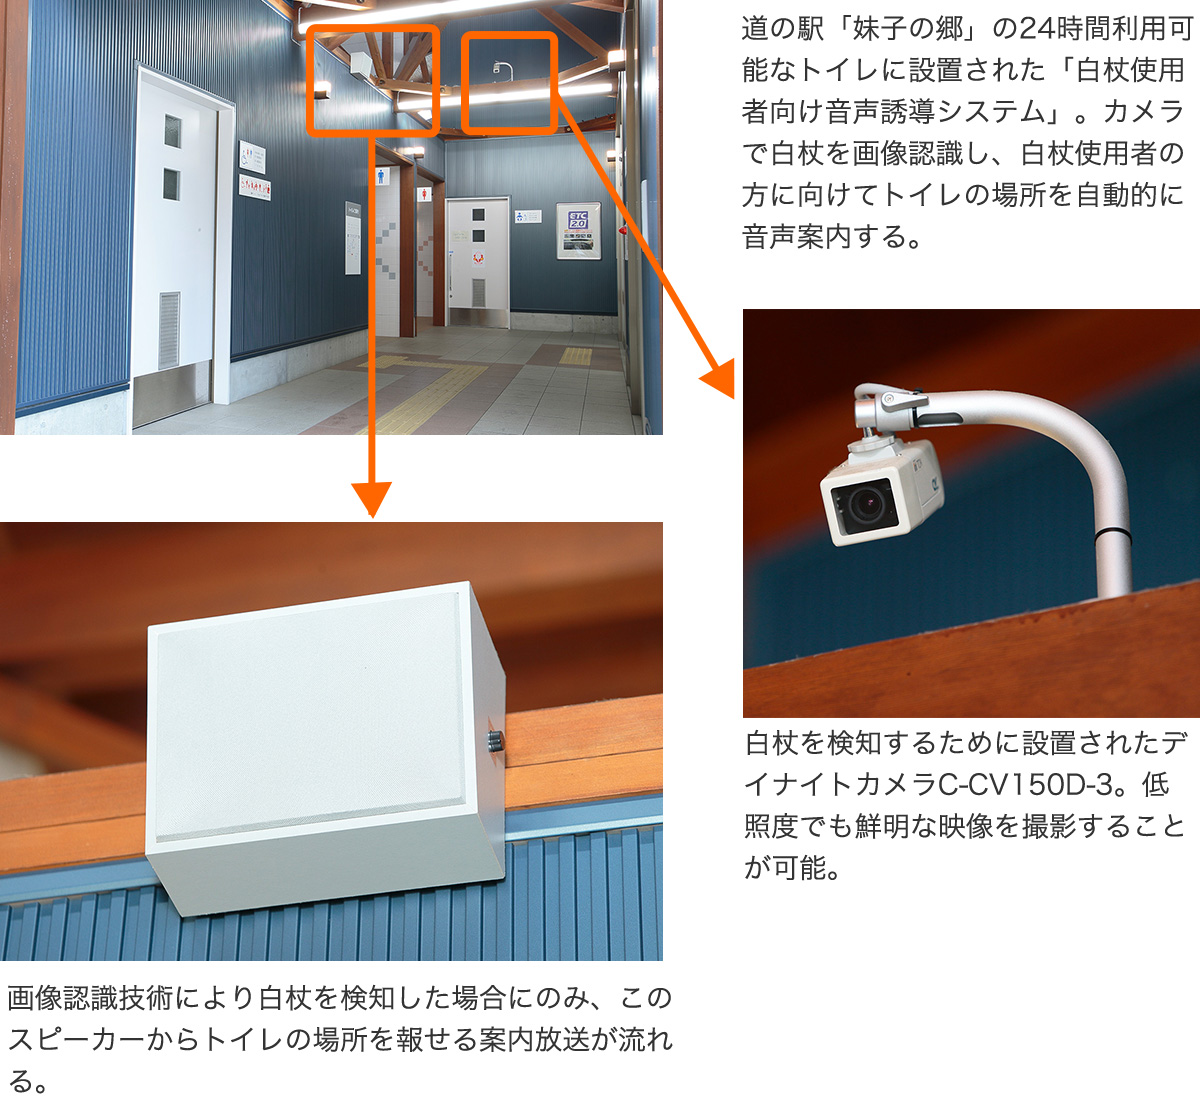 道の駅「妹子の郷」の24時間利用可能なトイレに設置された「白杖使用者向け音声誘導システム」。カメラで白杖を画像認識し、白杖使用者の方に向けてトイレの場所を自動的に音声案内する。（拡大写真左）画像認識技術により白杖を検知した場合にのみ、このスピーカーからトイレの場所を報せる案内放送が流れる。（拡大写真右）白杖を検知するために設置されたデイナイトカメラC-CV150D-3。低照度でも鮮明な映像を撮影することが可能。